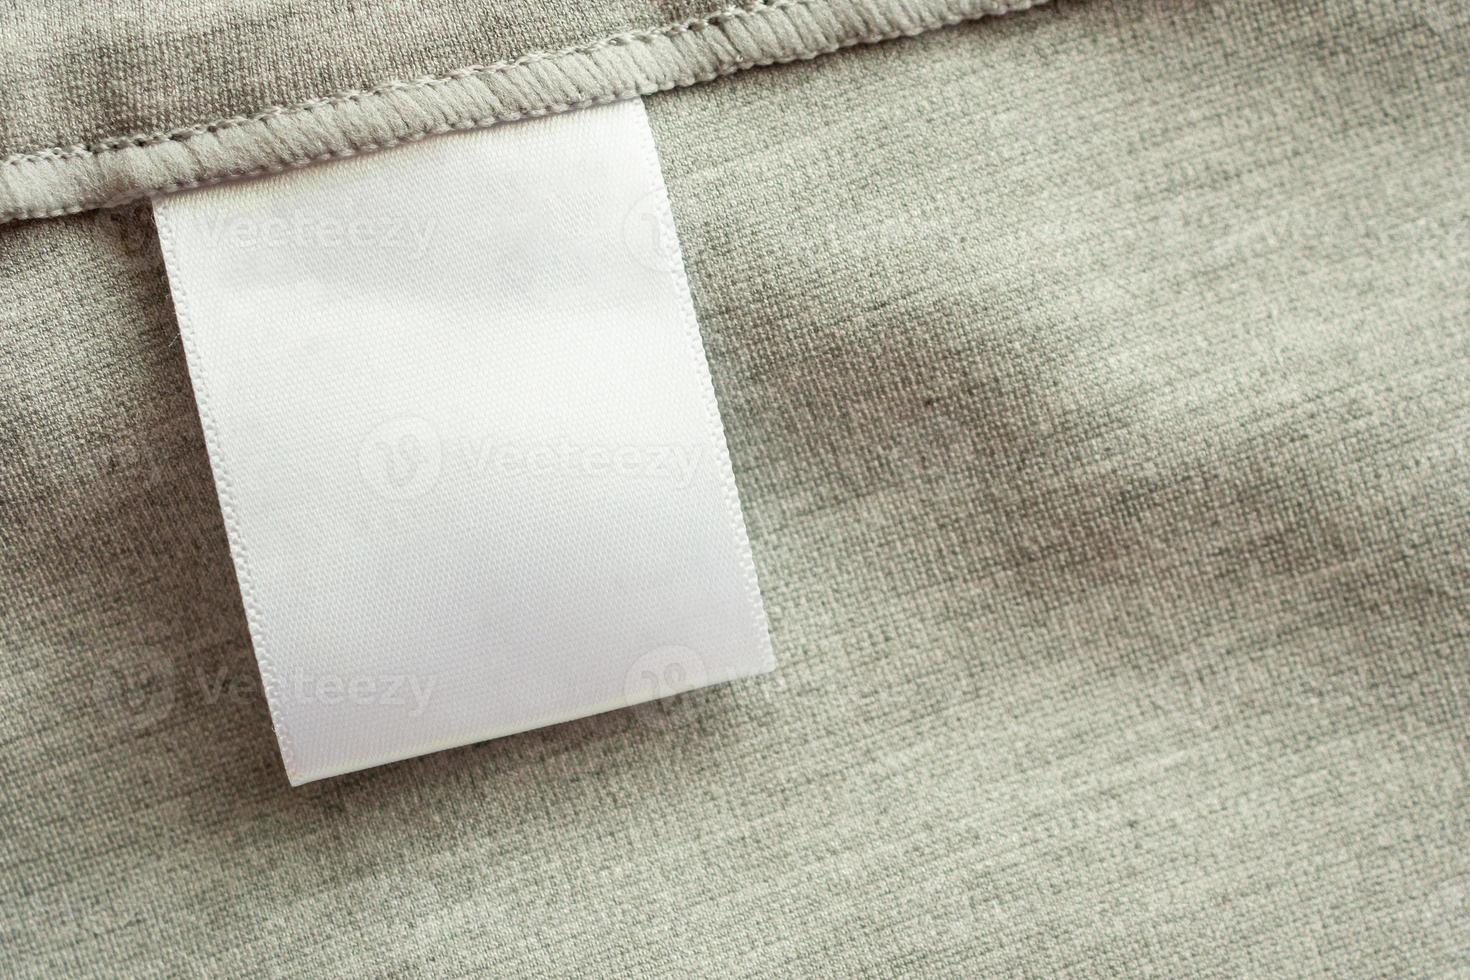 etiqueta de roupas de lavanderia em branco em branco no fundo de textura de tecido cinza foto